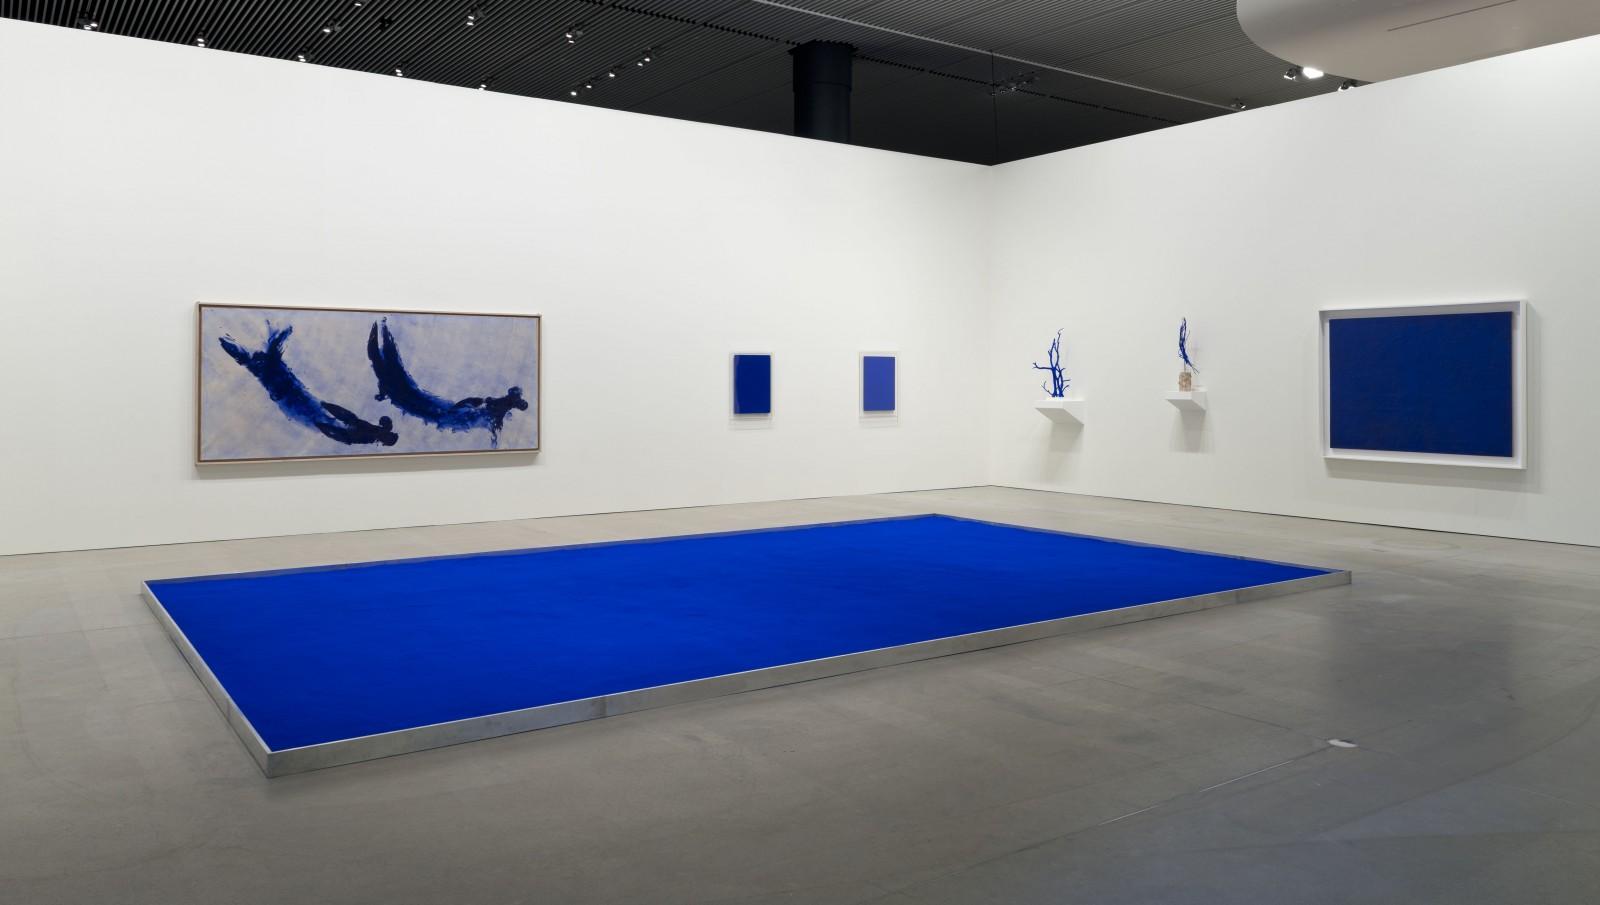 Vue de l'exposition "Klein - Byars - Kapoor", MAMAC - Musée d'Art Moderne et d'Art Contemporain de Nice, 2012